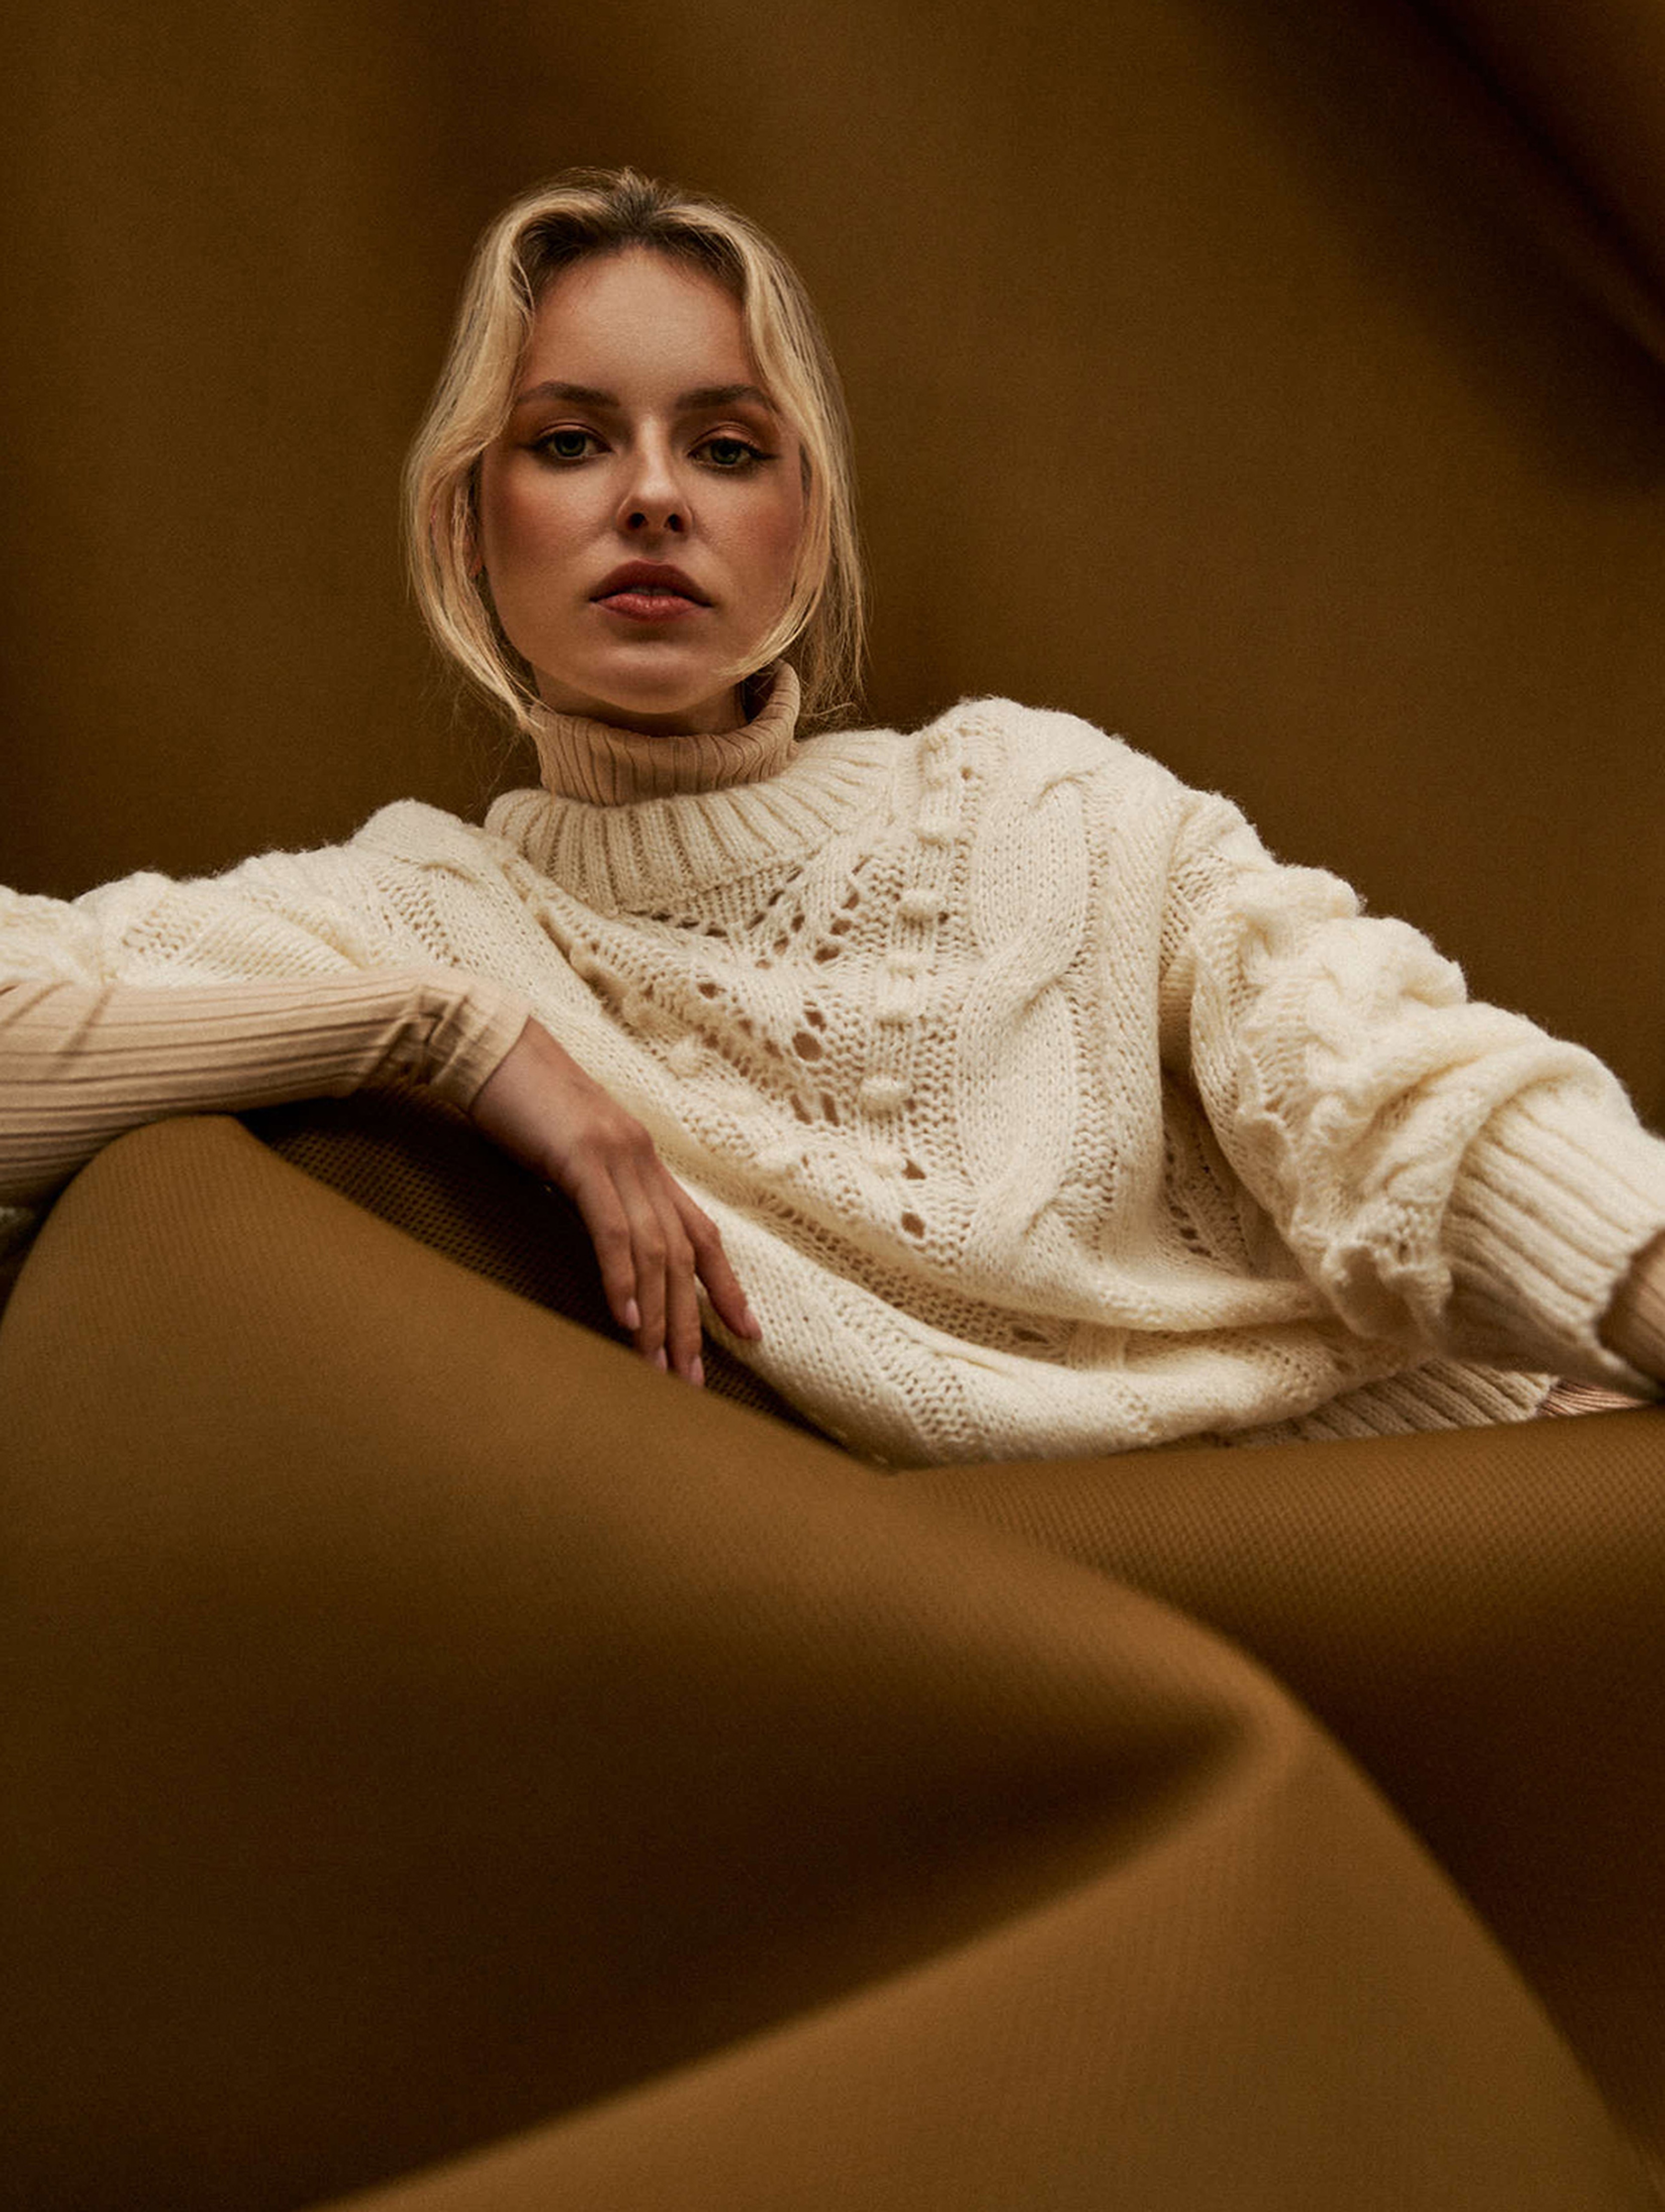 Ażurowy sweter damski lużny - ecru